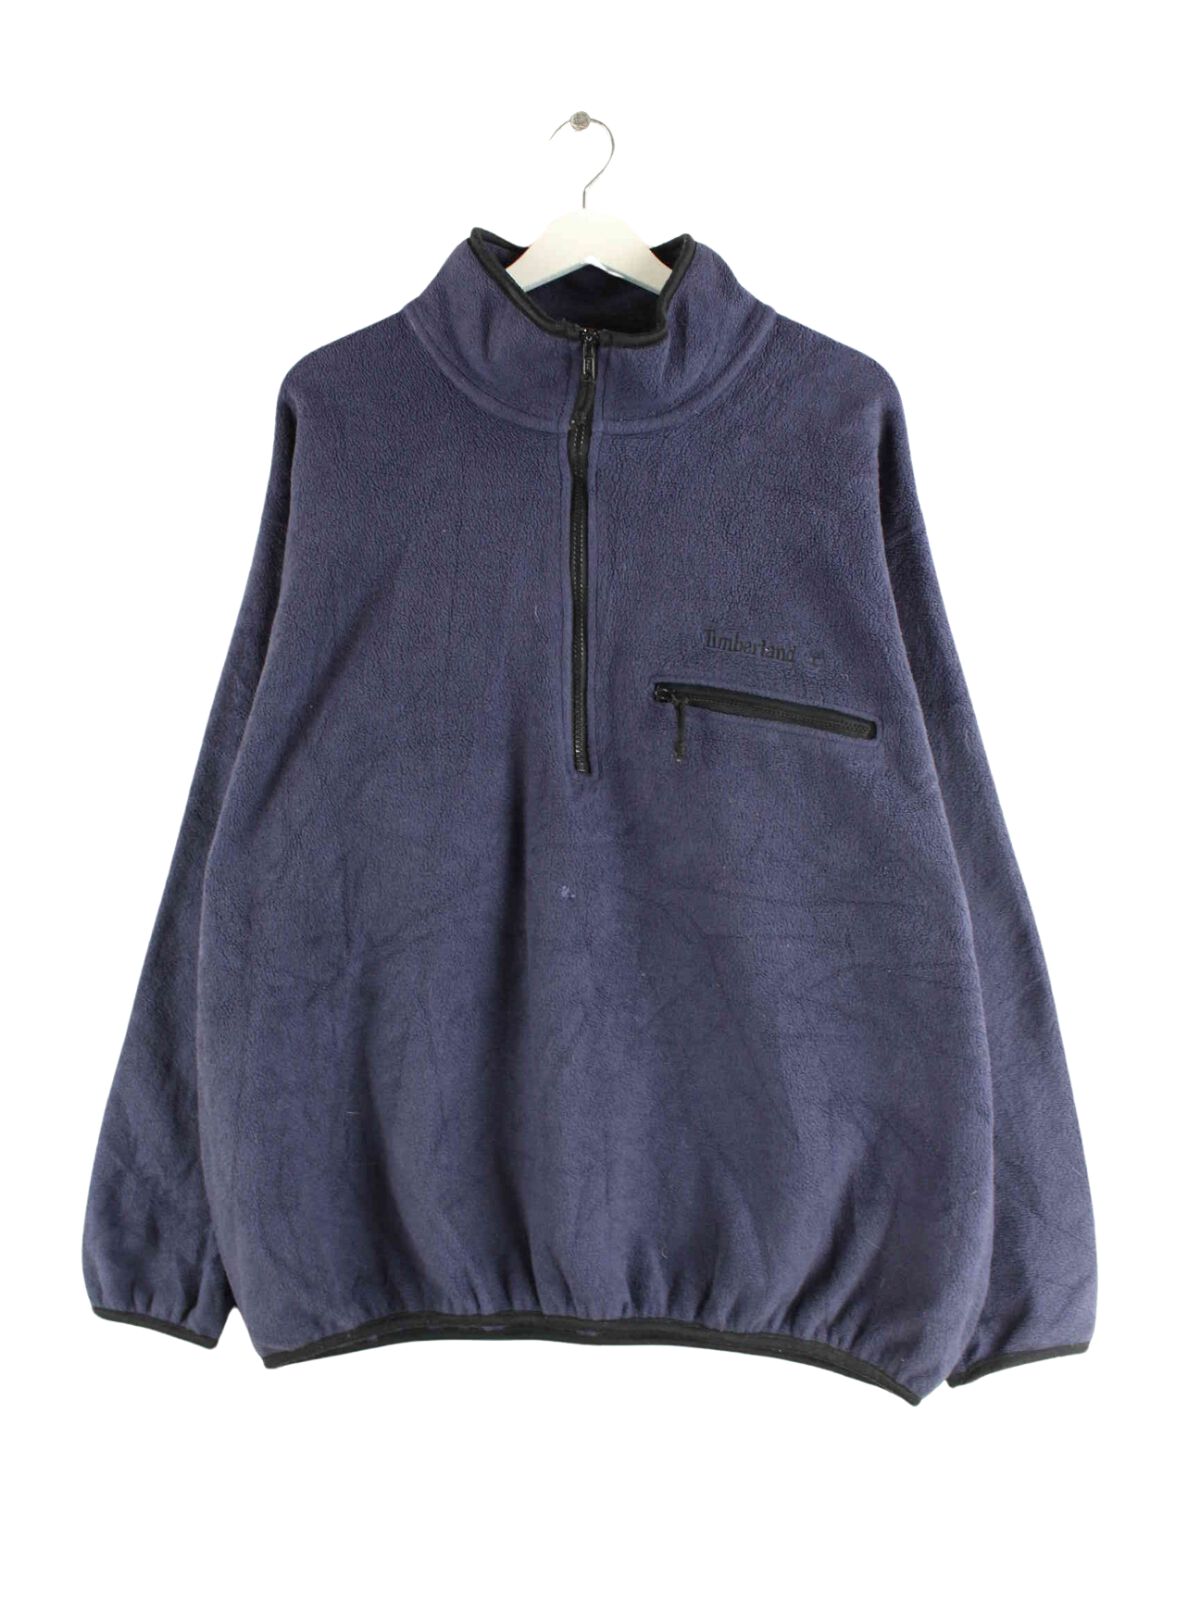 Timberland 90s Fleece Half Zip Sweater Blau L (front image)